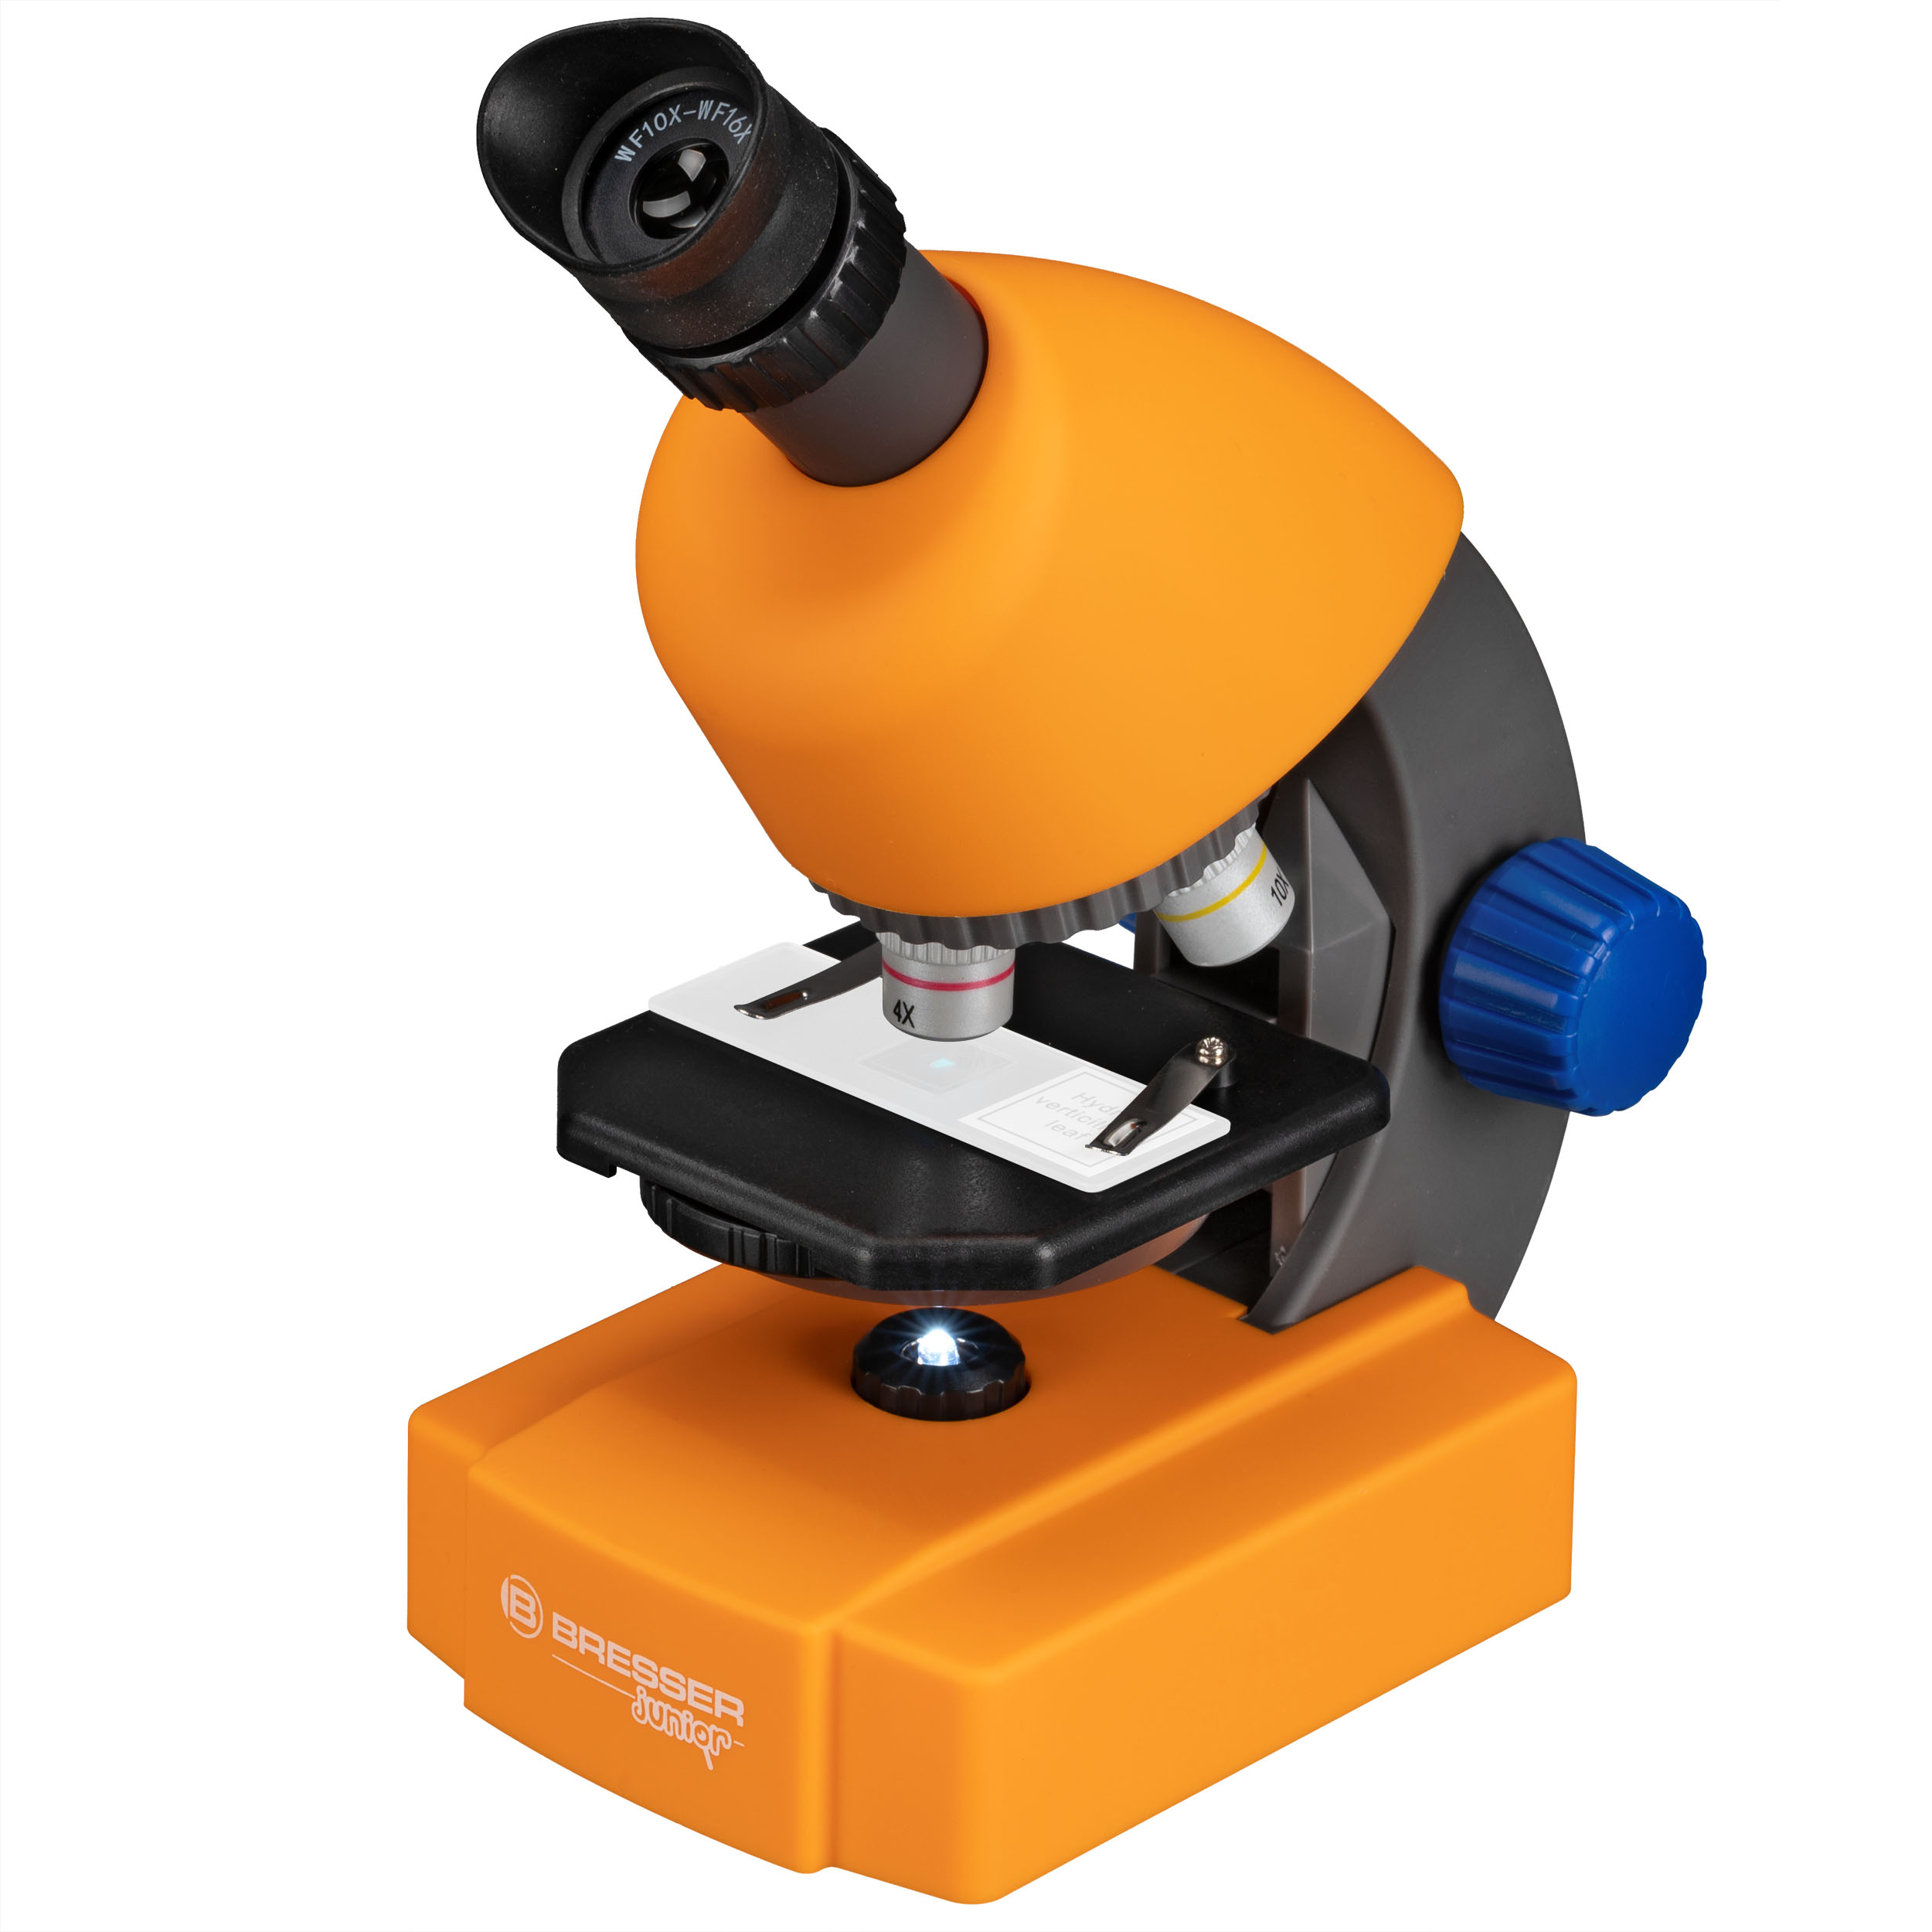 BRESSER JUNIOR Kindermikroskop mit Zoomokular 40x-640x Vergrößerung (Refurbished)